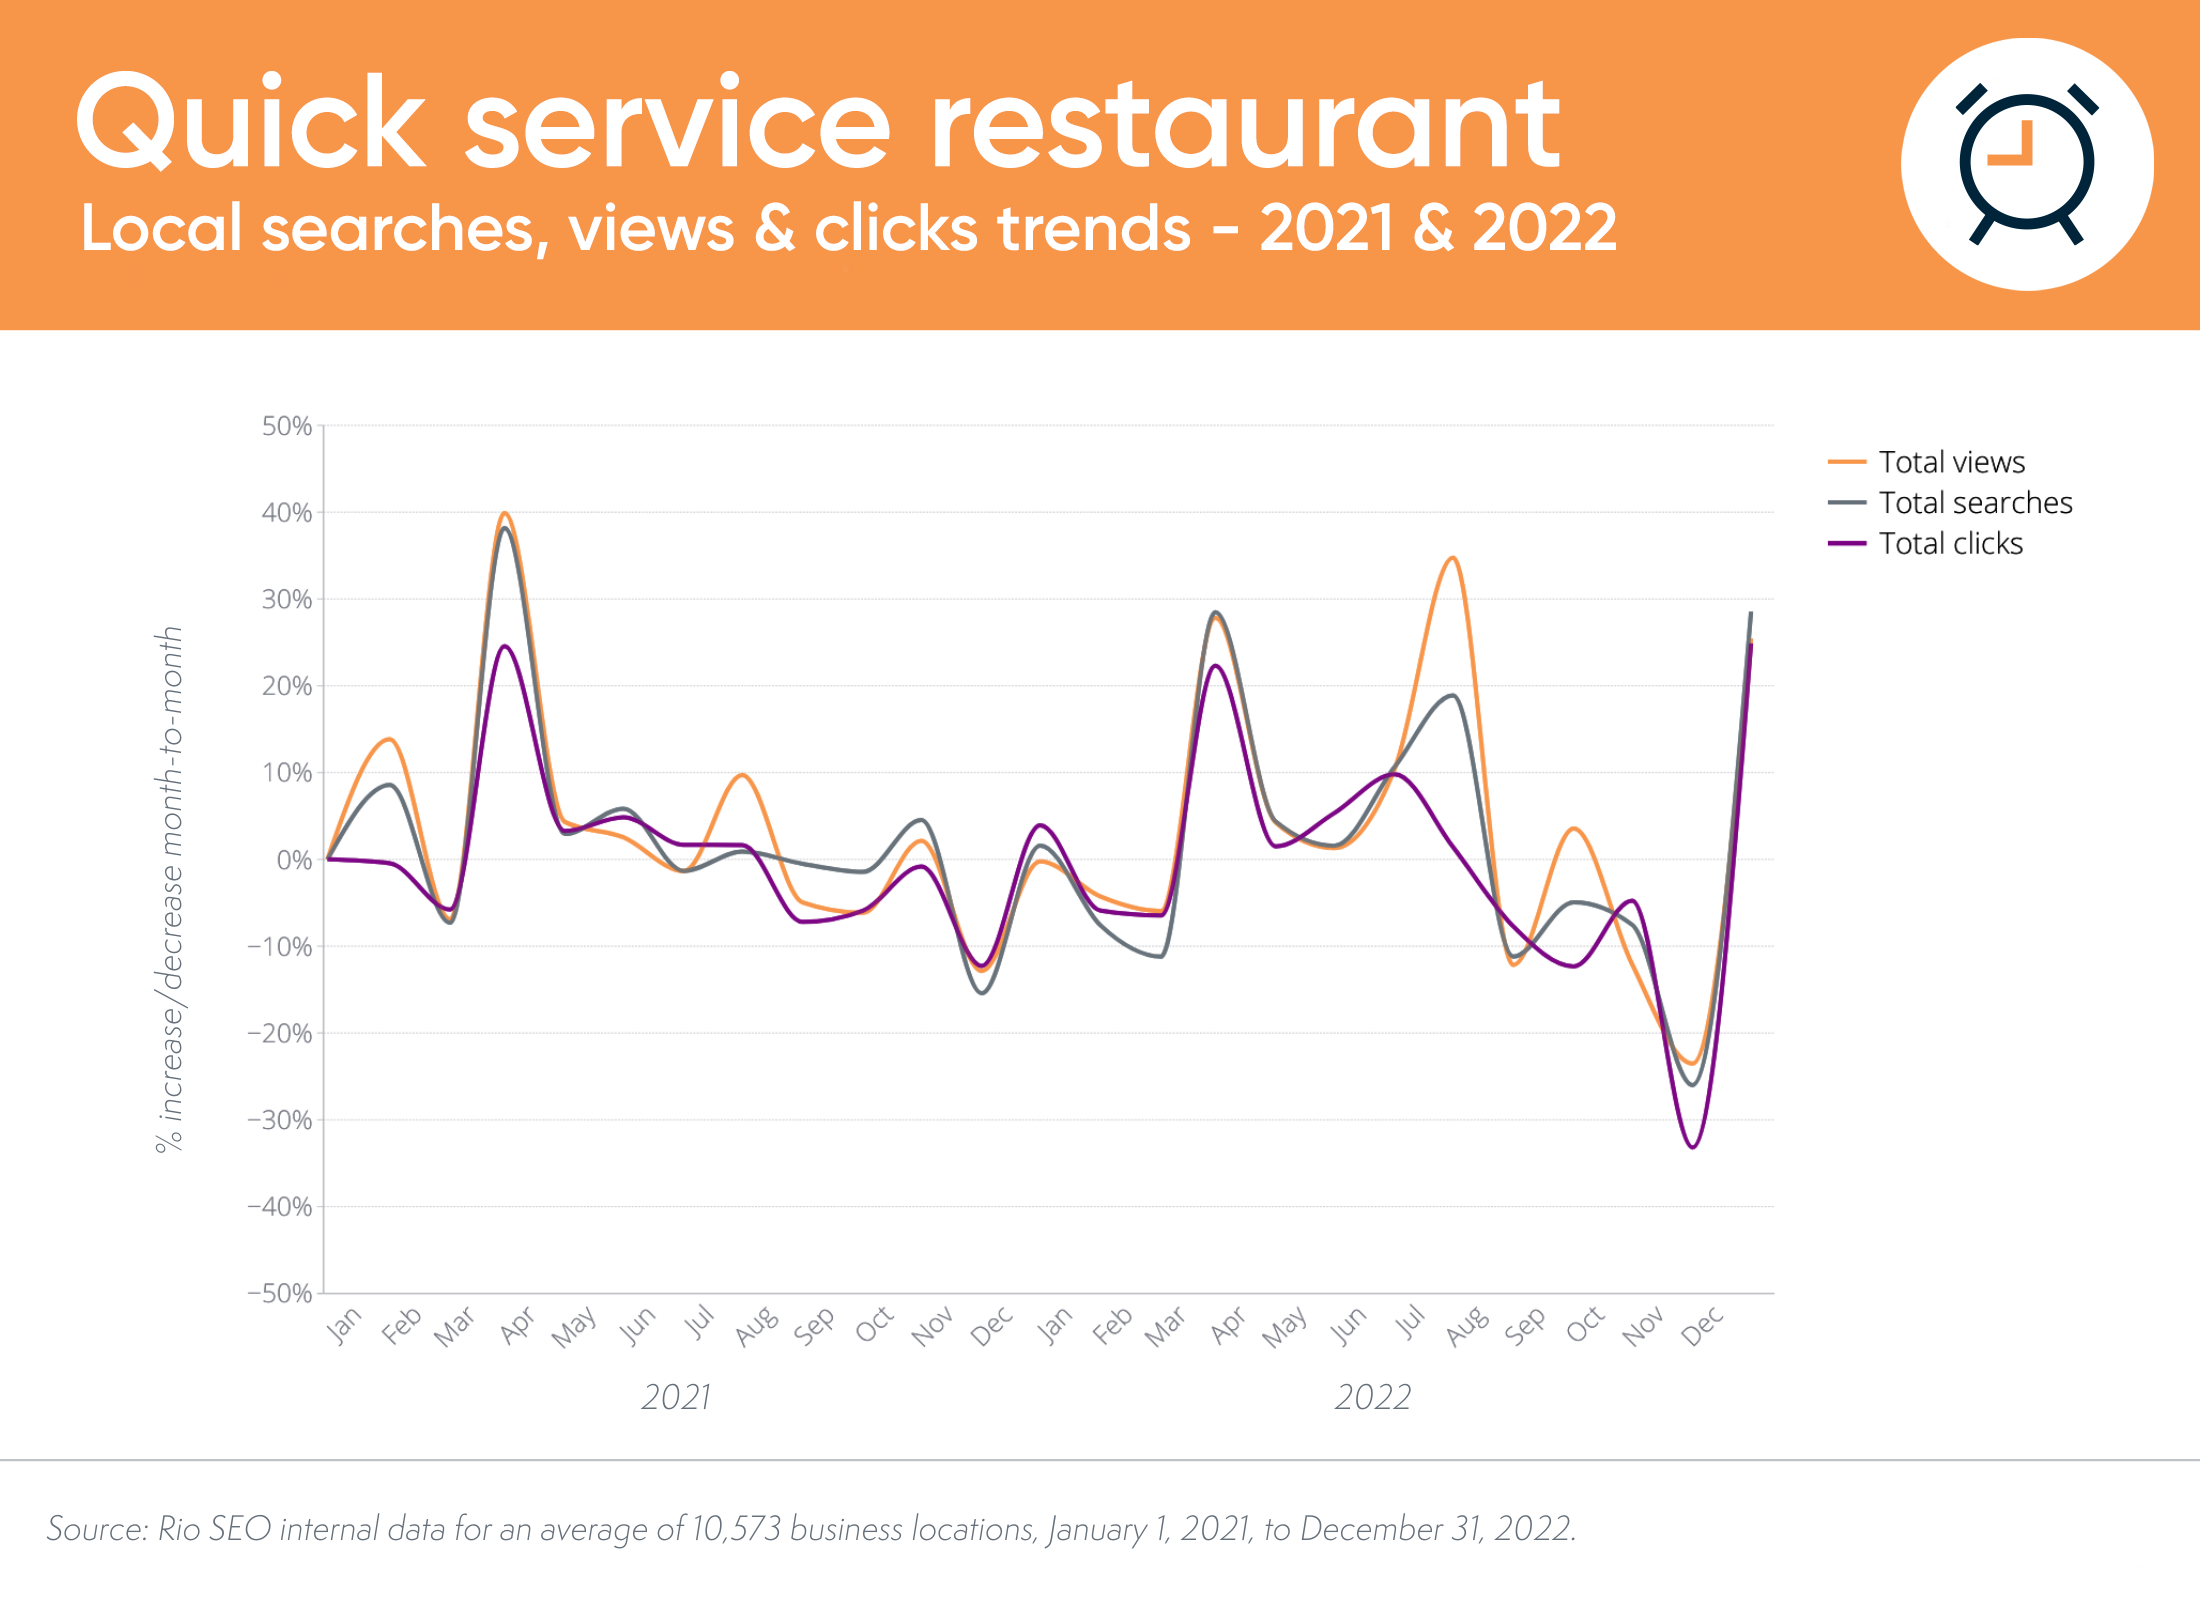 Tendances locales de recherche et de conversion des restaurants à service rapide